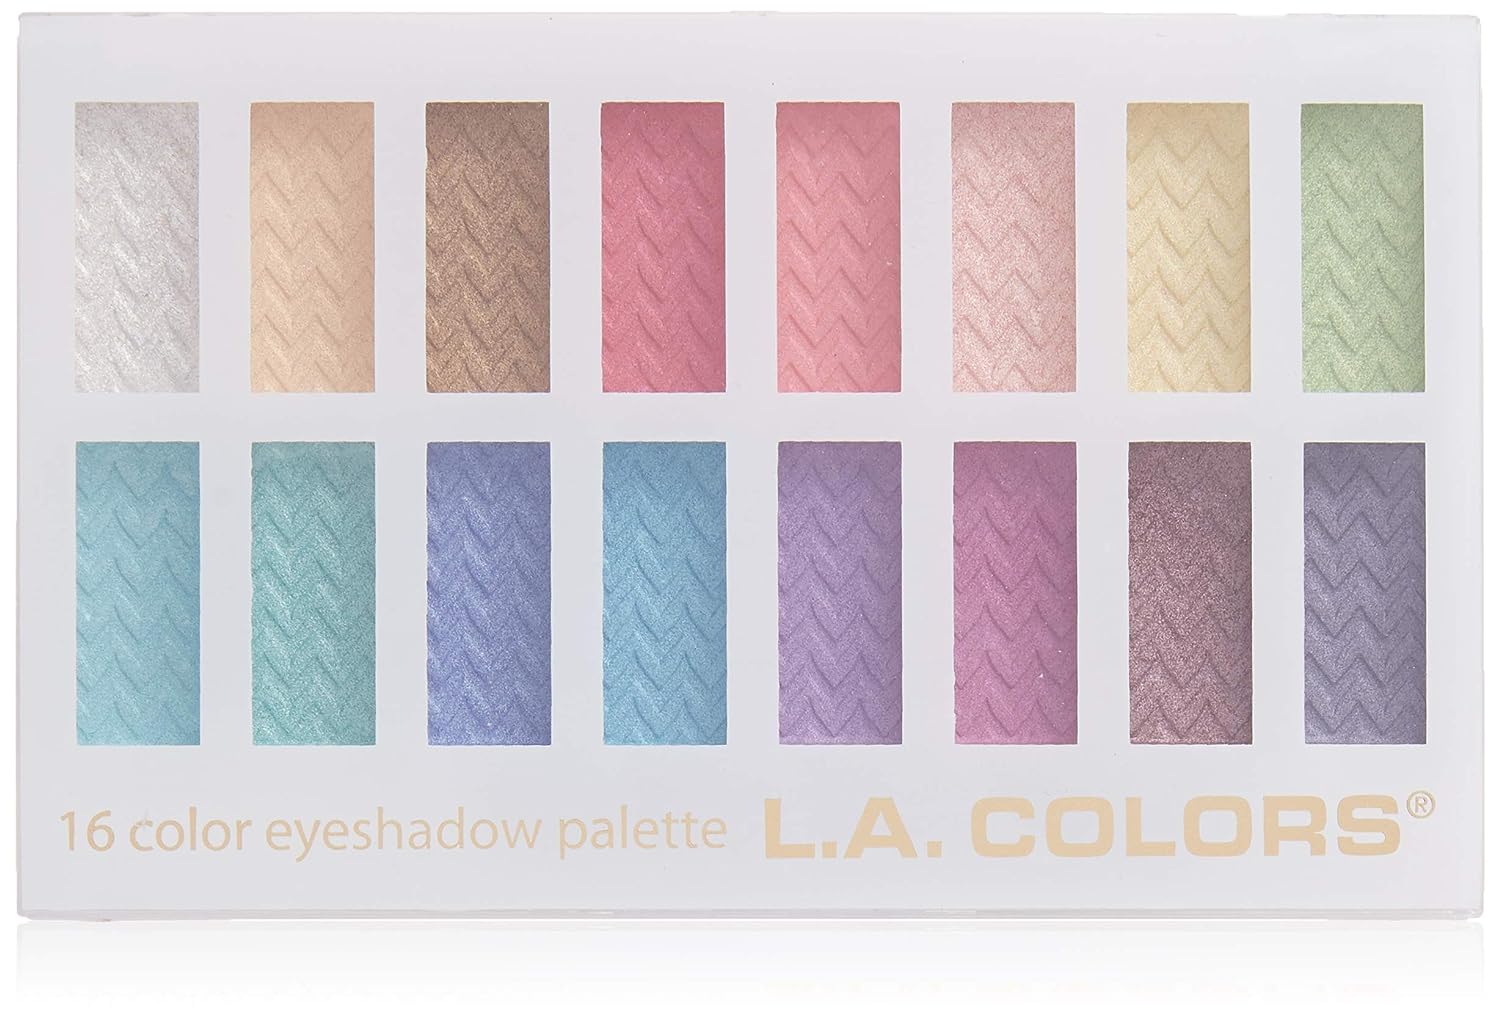 L.A. COLORS 16 Color Eyeshadow Palette, Haute, 1.02